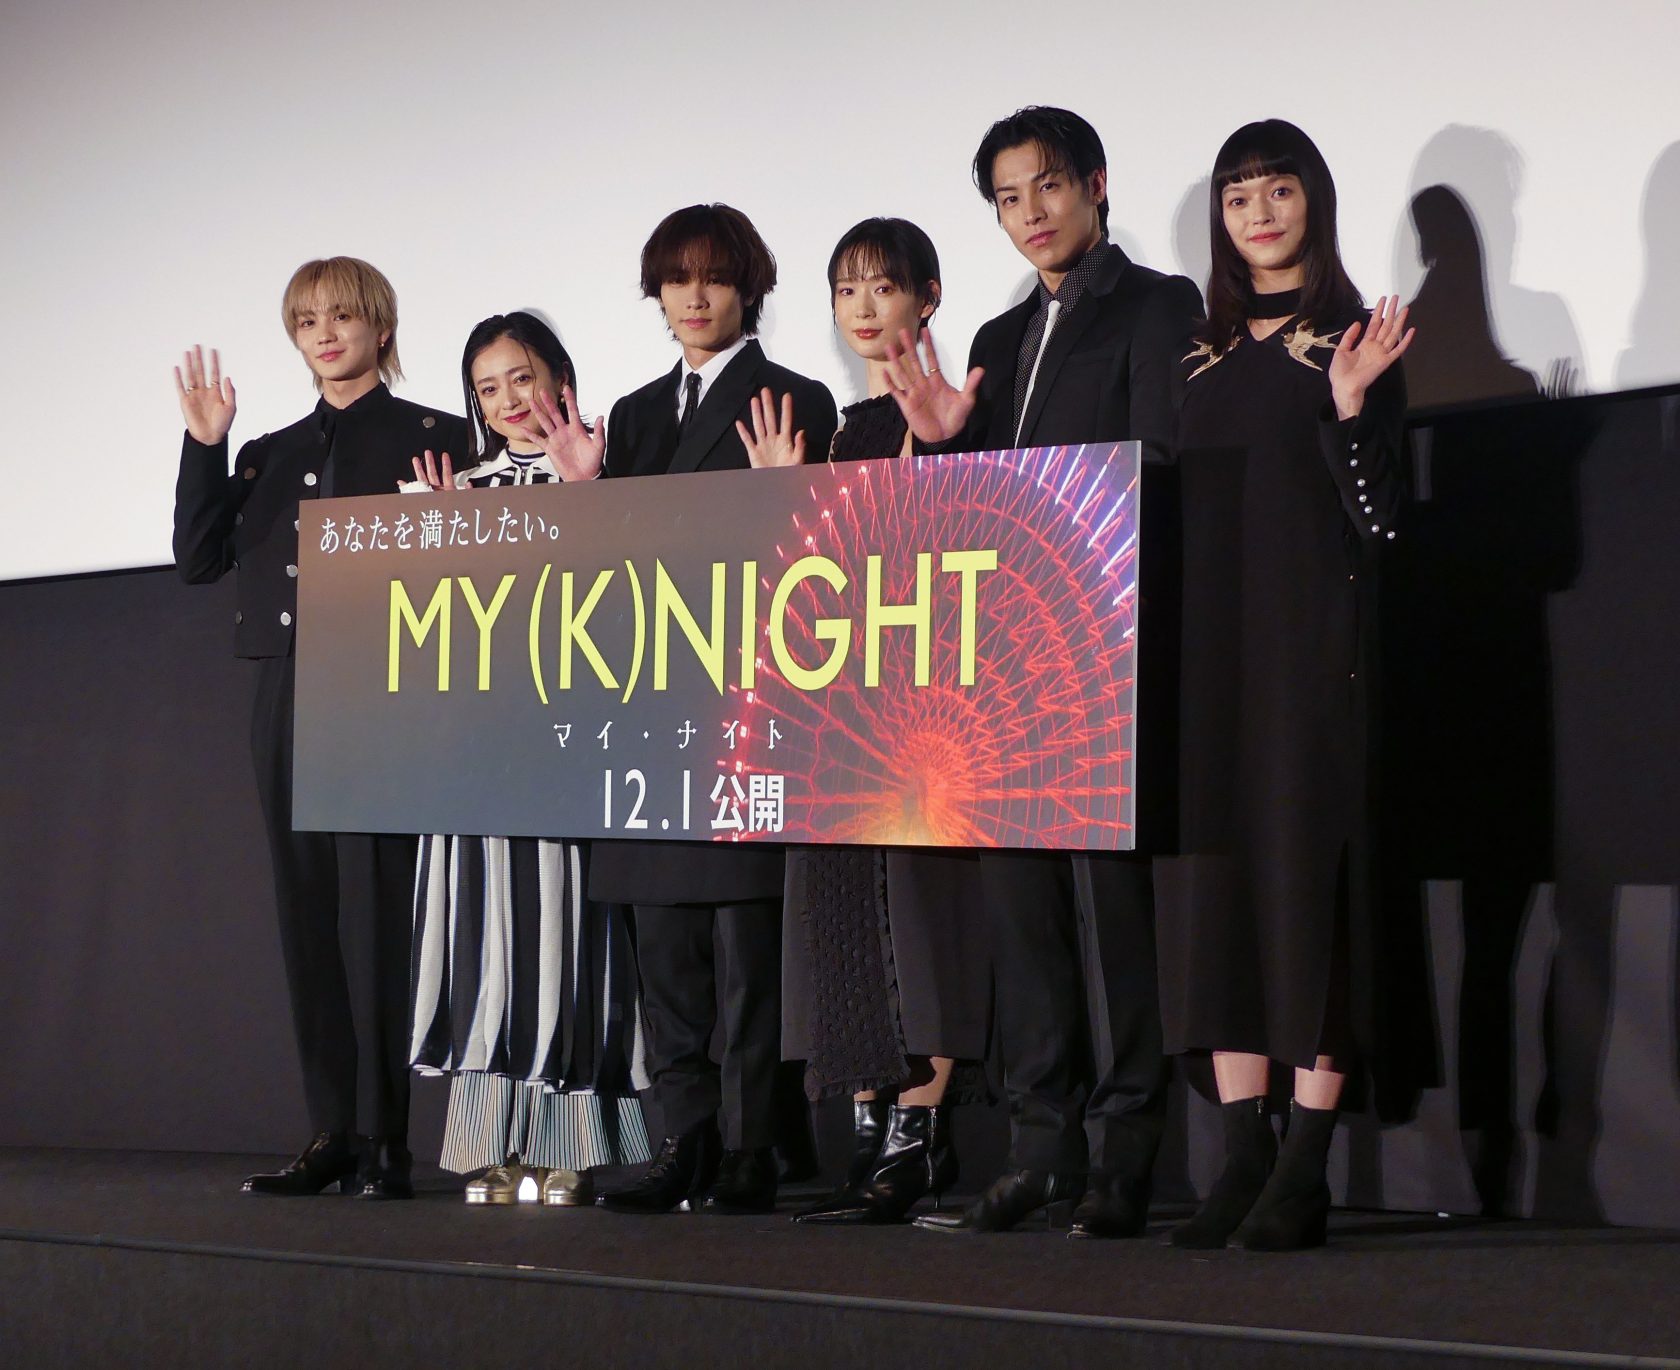 映画「MY (K)NIGHT マイ・ナイト」の公開前夜舞台あいさつに出席した(左から)吉野北人、安達祐実、川村壱馬、穂志もえか、RIKU、夏子